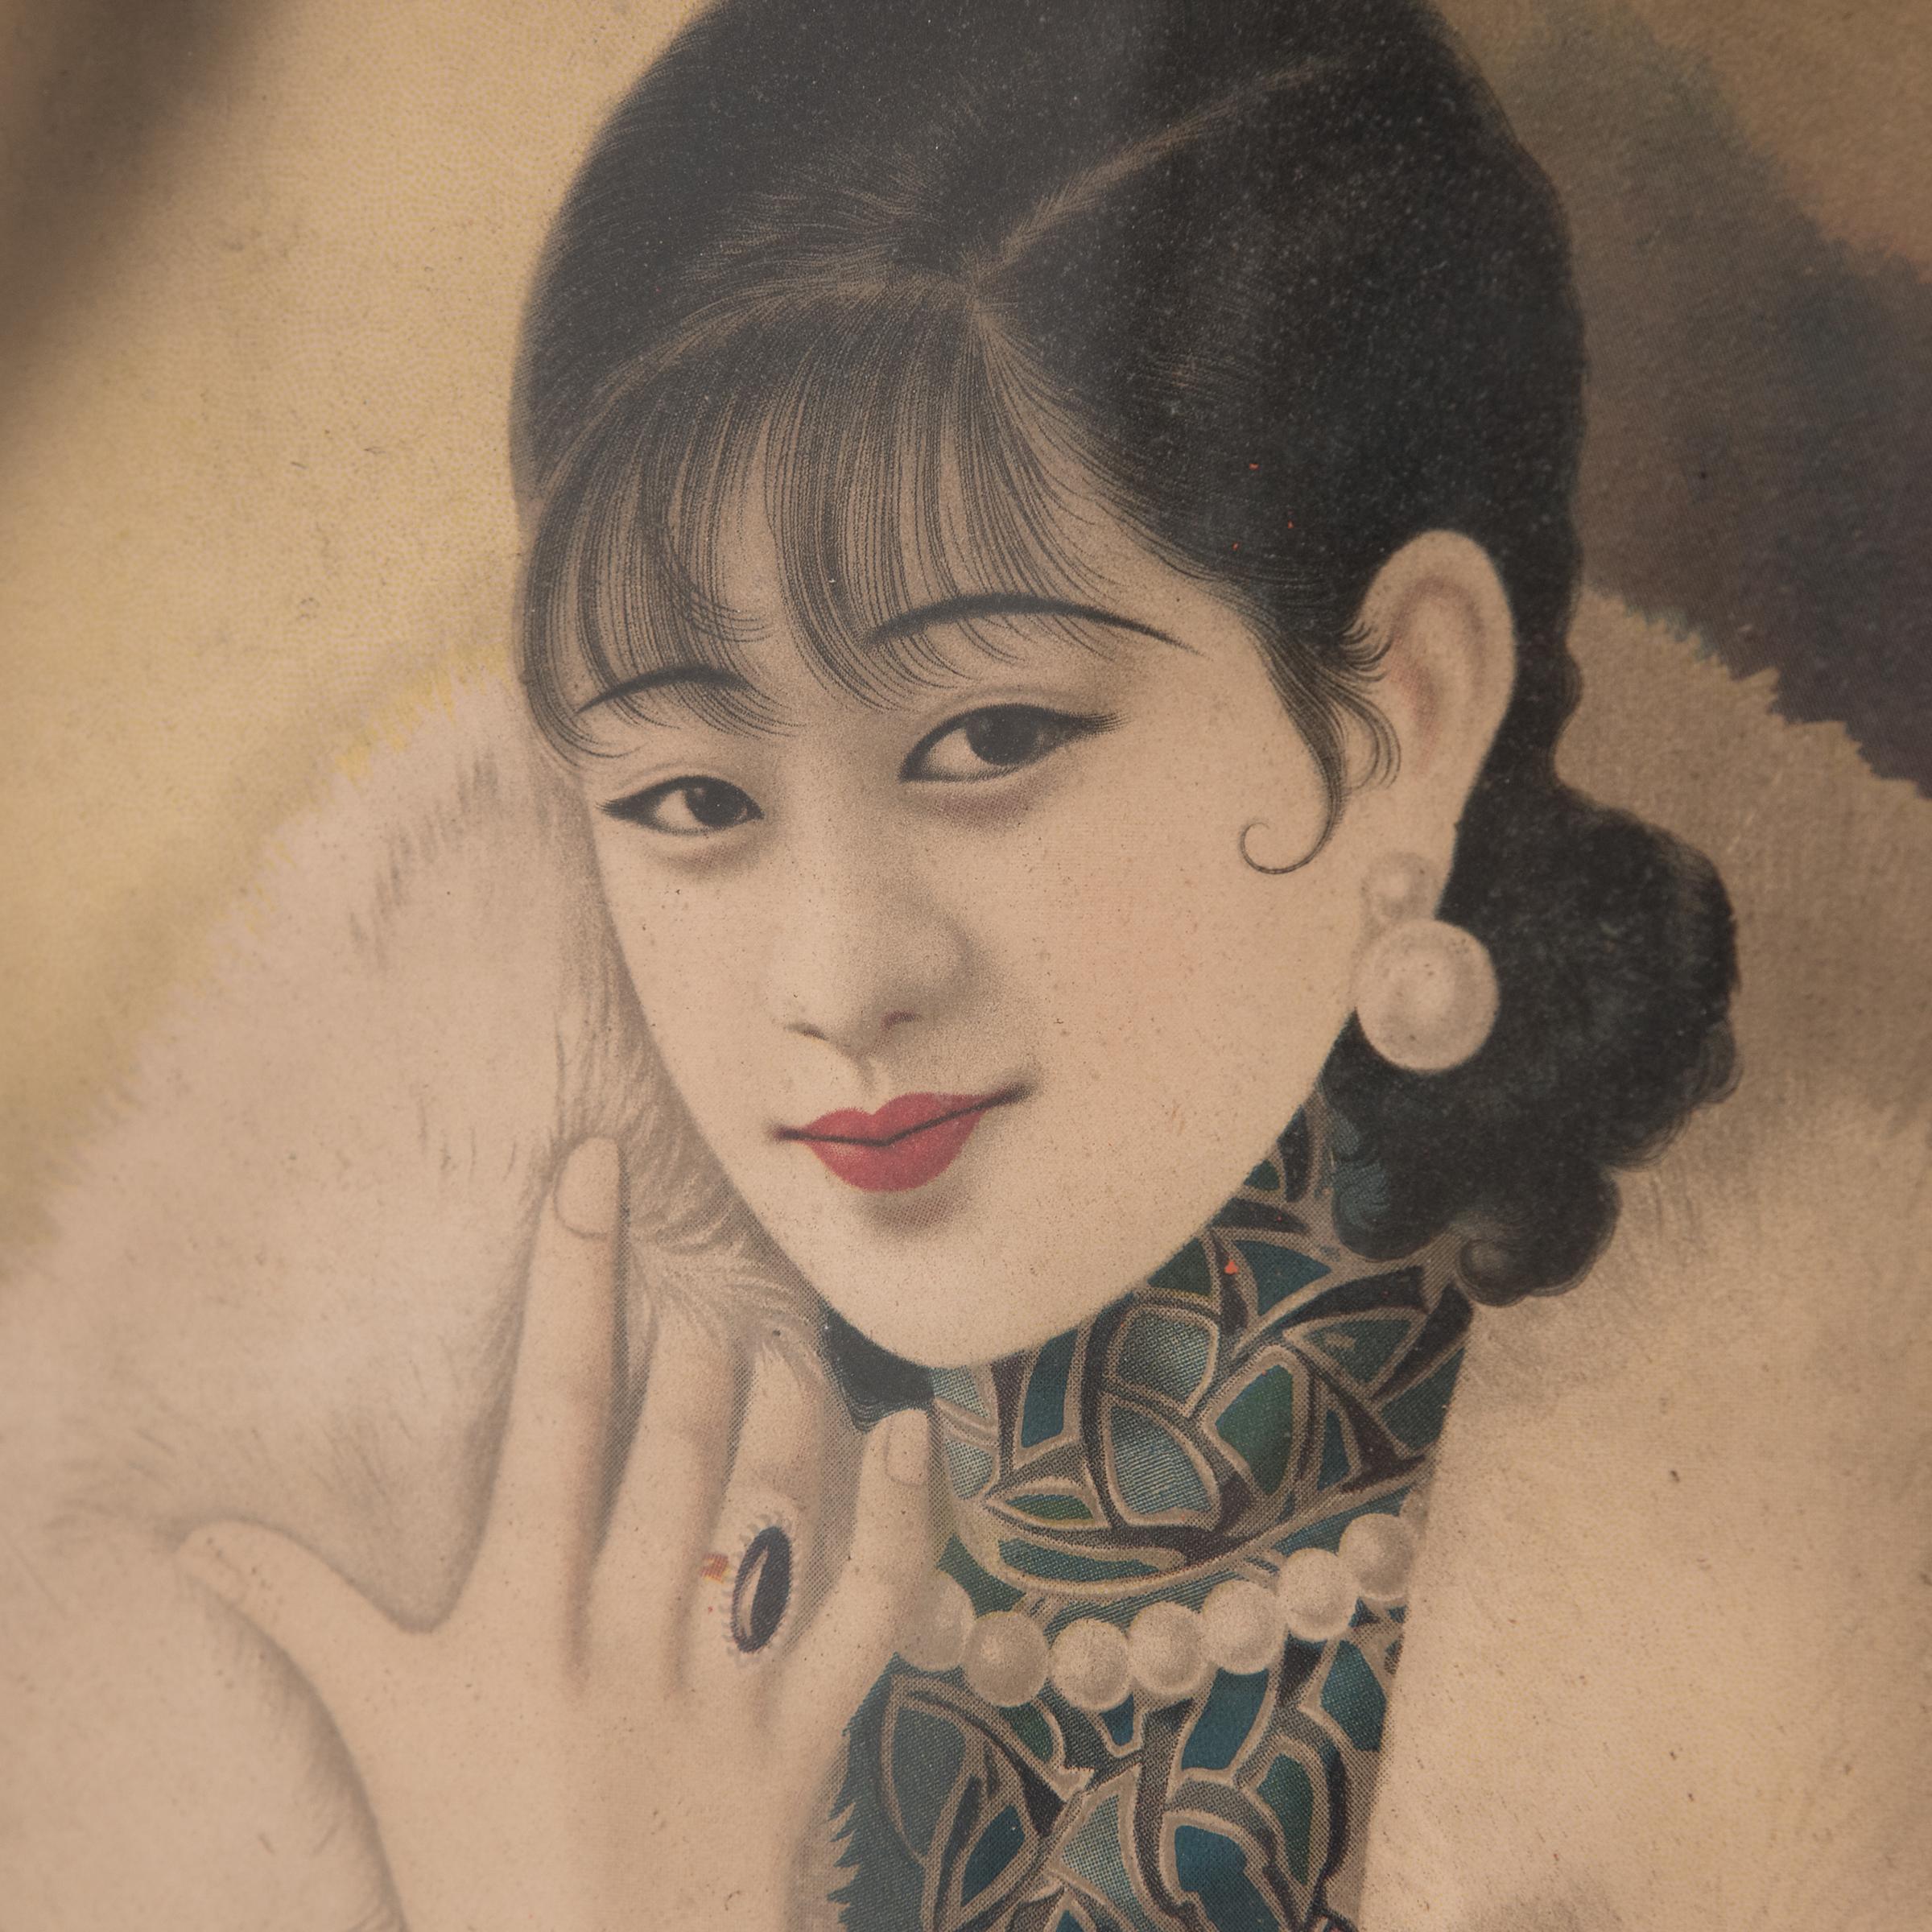 Beeinflusst von der westlichen Werbung wurden Werbeplakate mit schönen Frauen in moderner Umgebung in den 1920er und 1930er Jahren in China immer beliebter. Handelsunternehmen präsentierten ihren Kunden Plakate wie dieses zum chinesischen